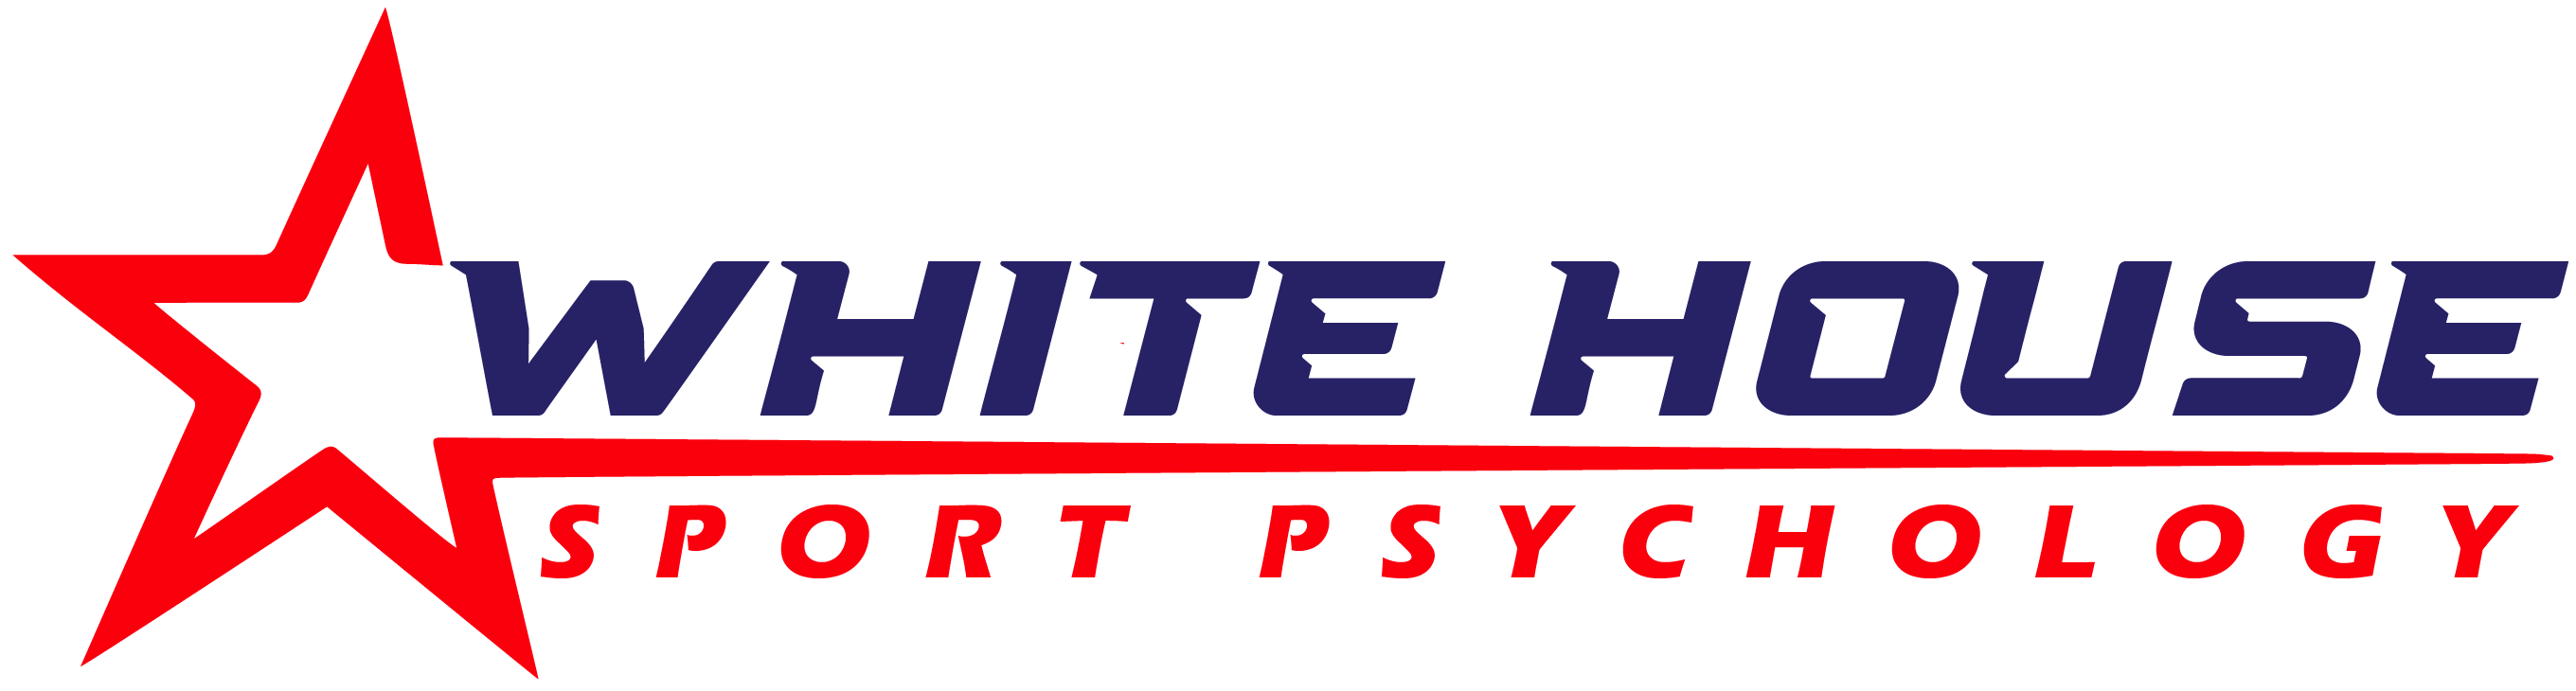 White House Sport Psychology logo